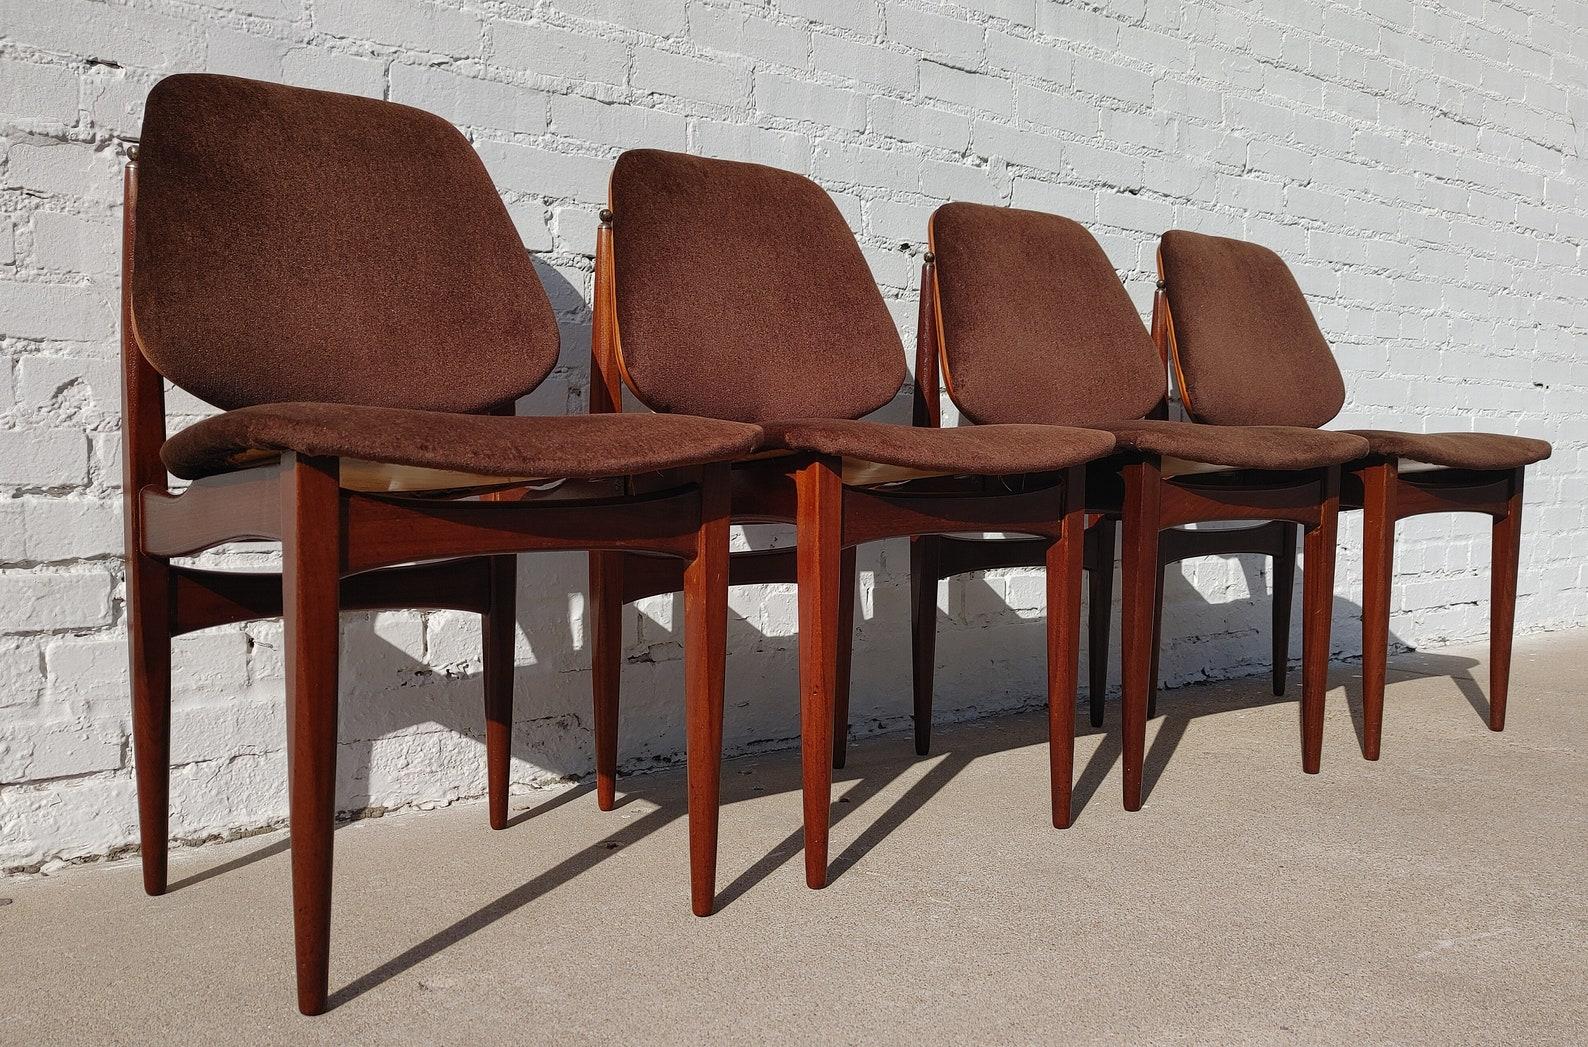 Ensemble de 4 chaises de salle à manger de style moderne anglais du milieu du siècle dernier Elliott's of Newbury

État vintage supérieur à la moyenne et structurellement sain. Les cadres présentent une légère usure de la finition et des rayures. Le